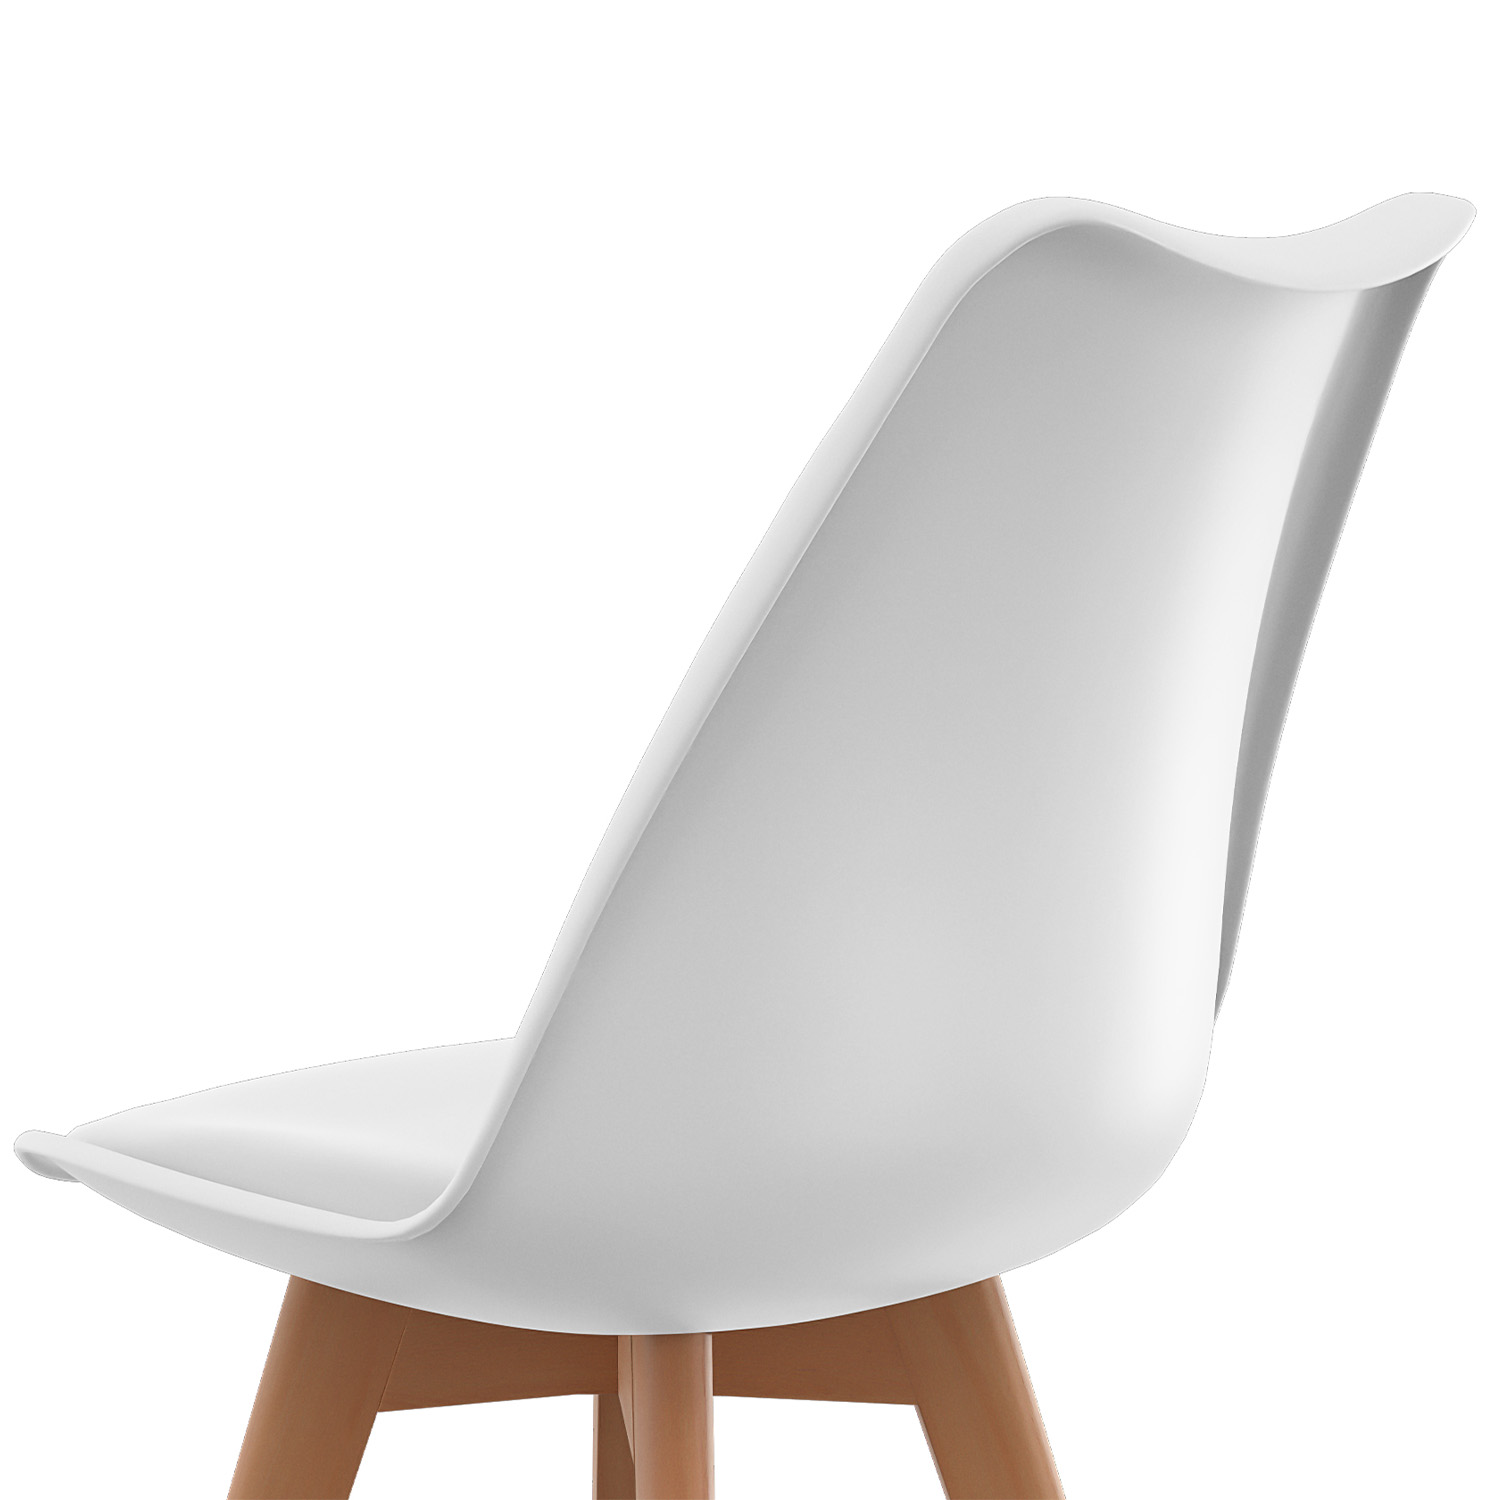 Lot de 4 chaises design contemporain nordique scandinave Blanc,chaises de  cuisine en bois